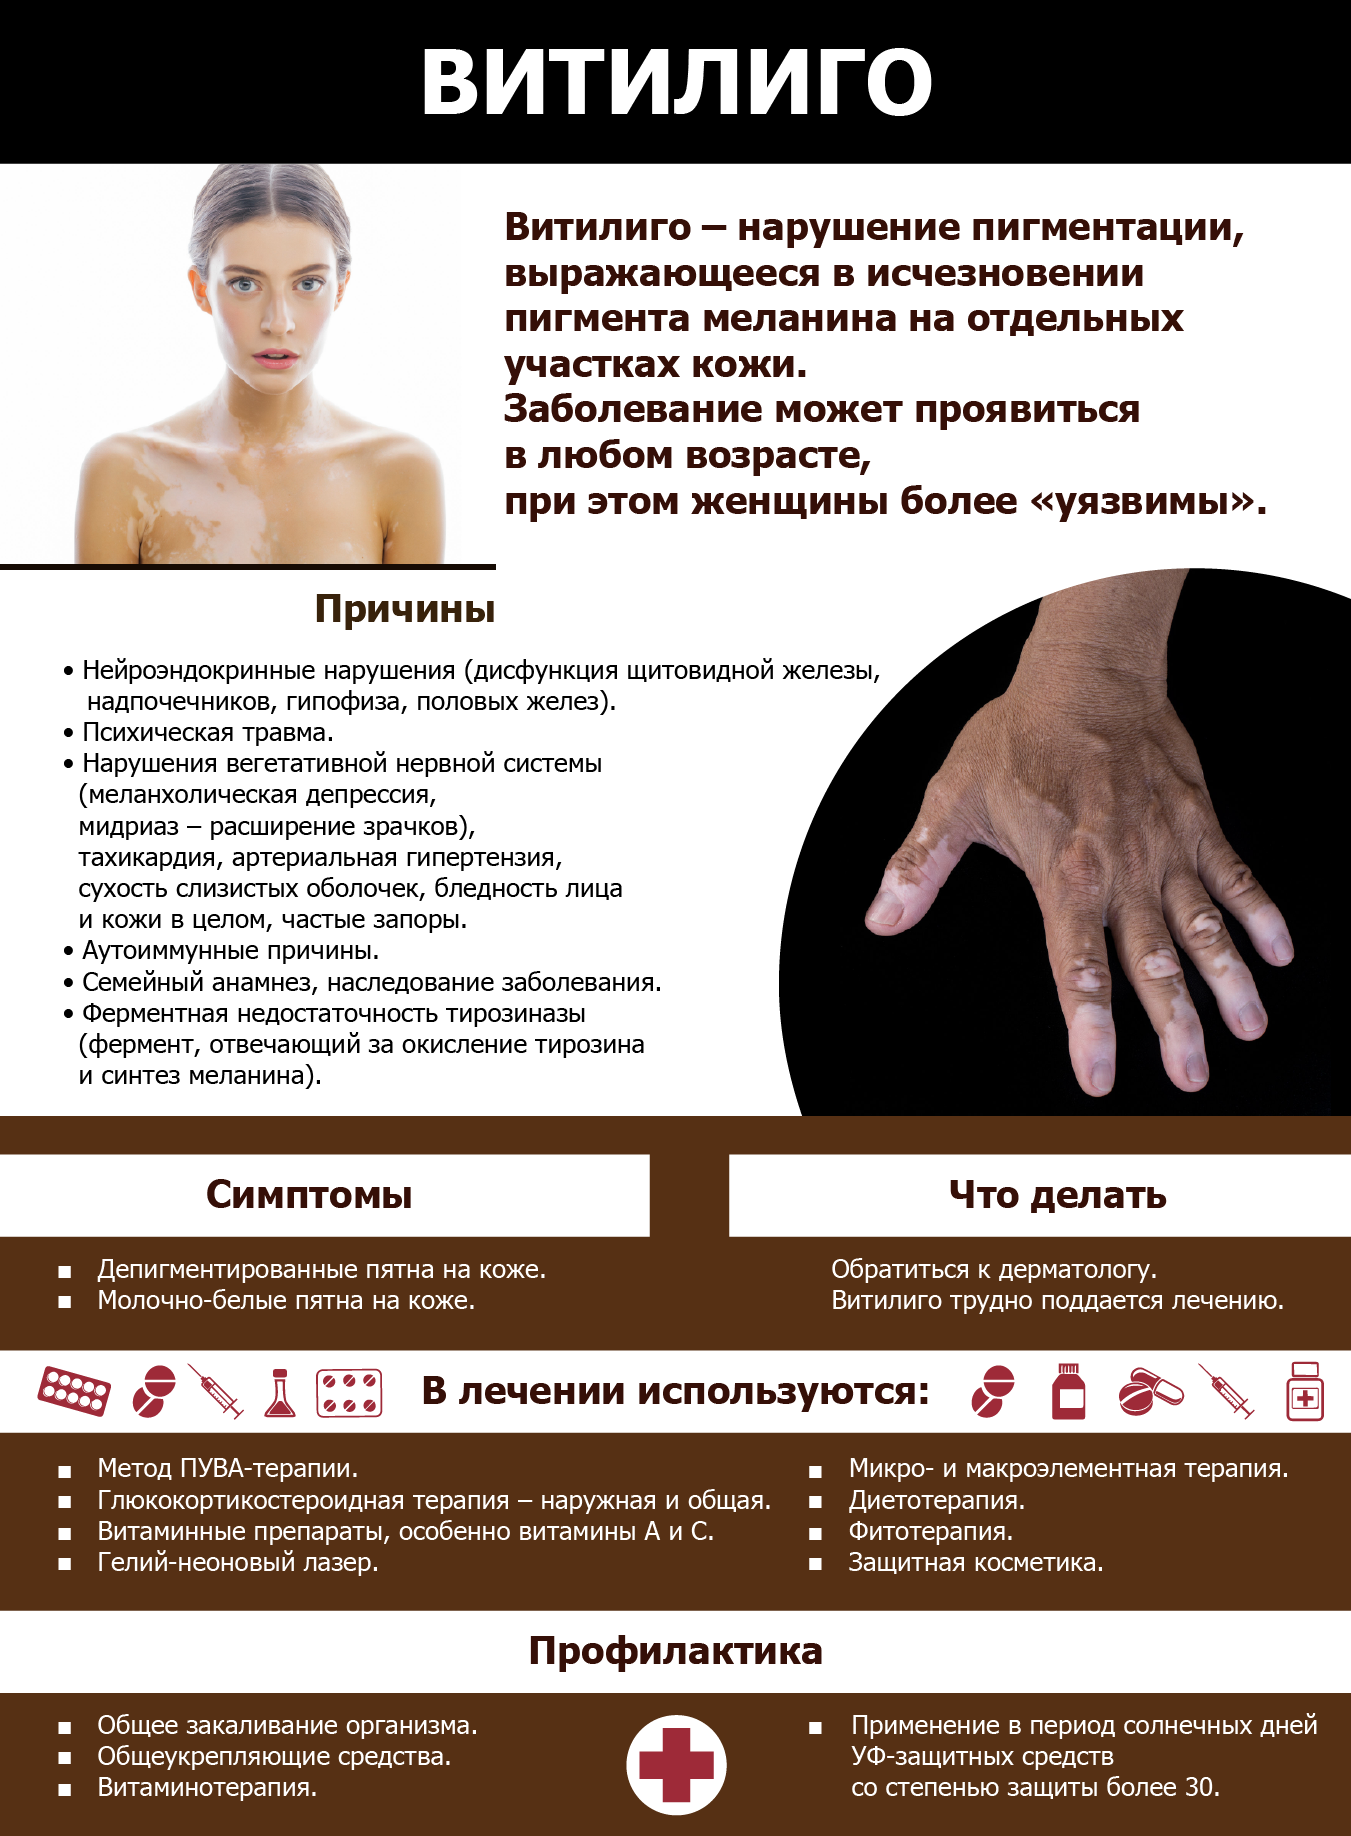 Витилиго кожи: причины и лечение